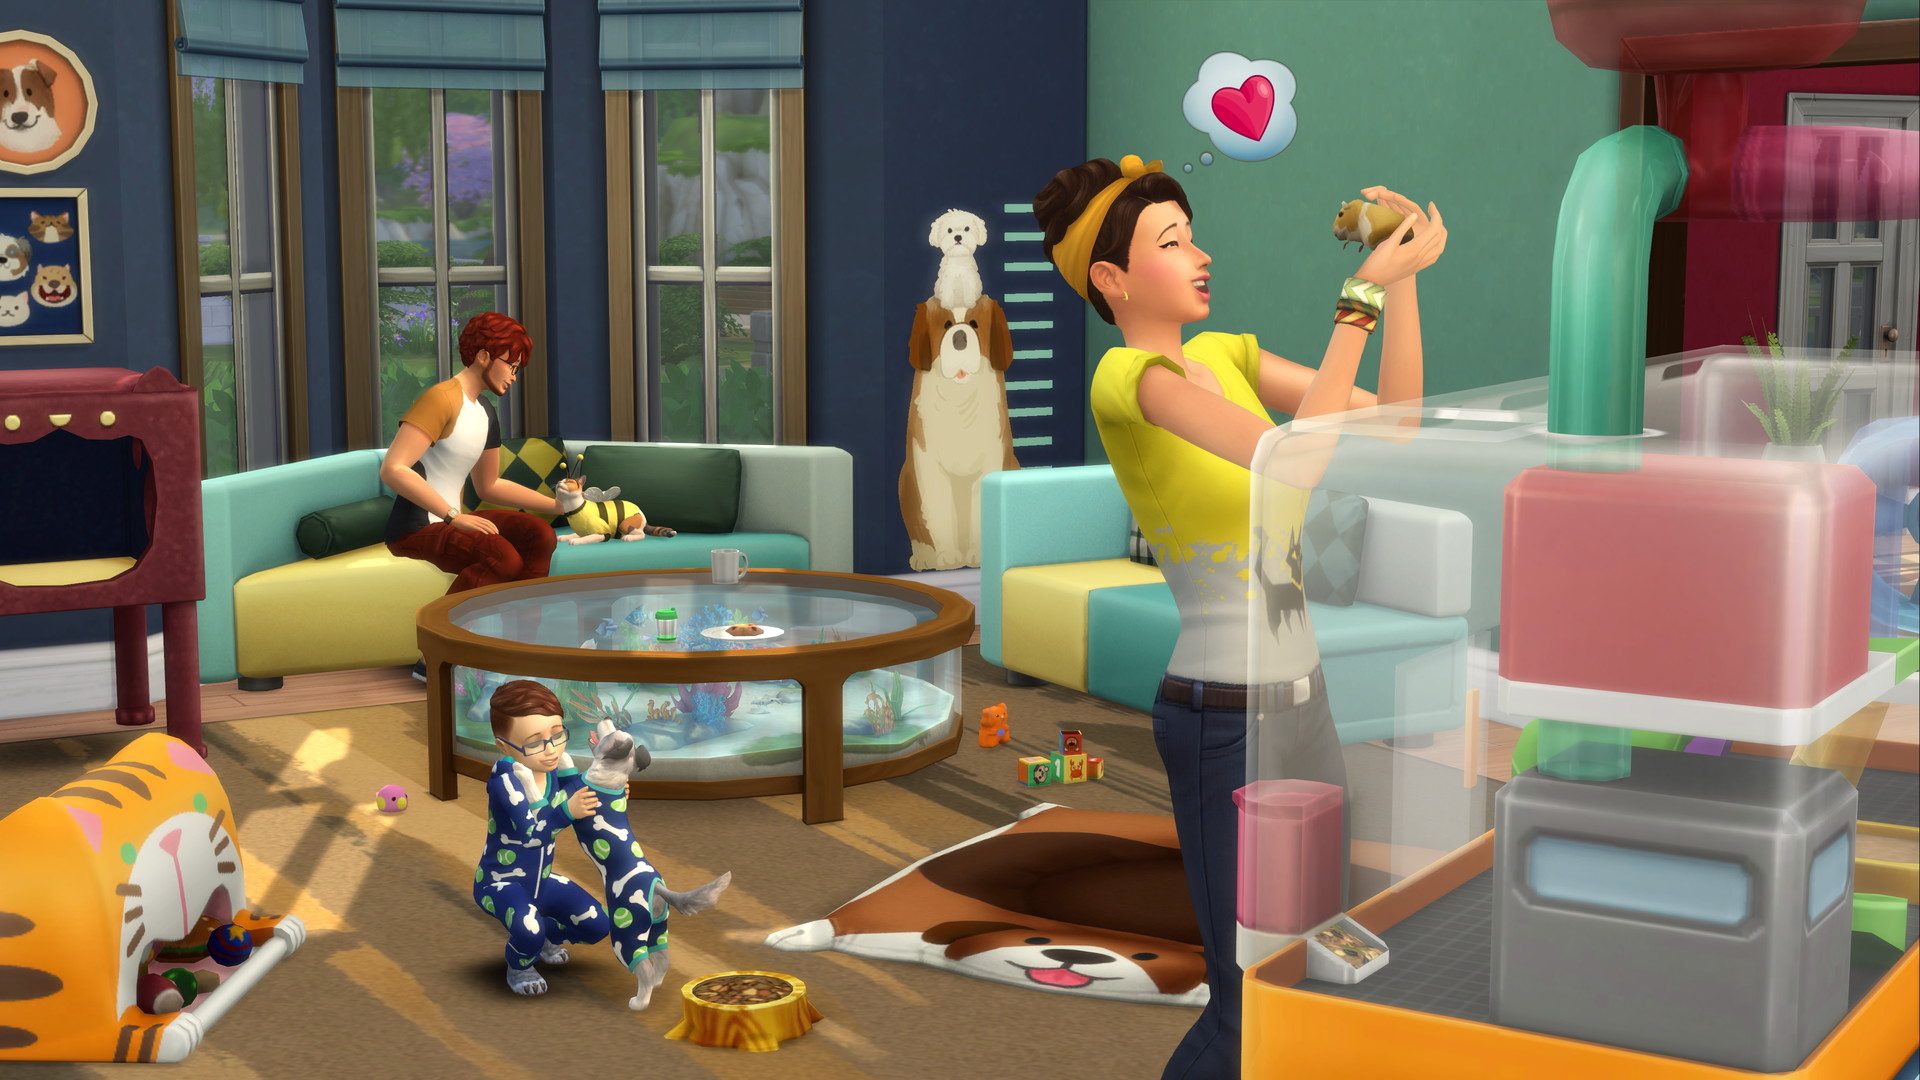 The Sims 4: My First Pet Stuff - screenshot 3